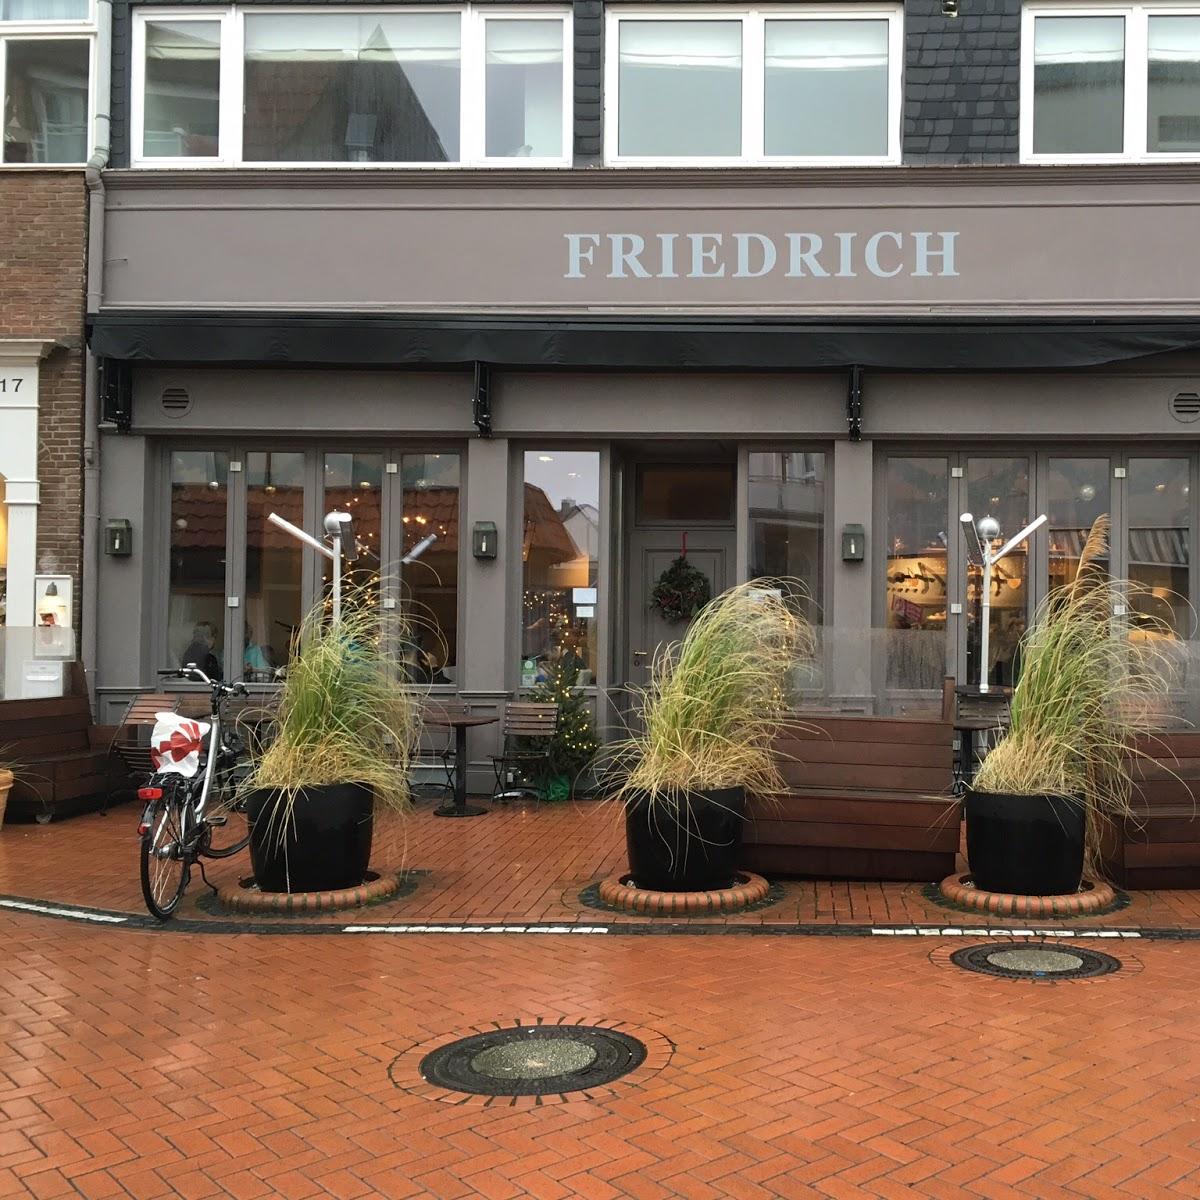 Restaurant "Friedrich" in Norderney